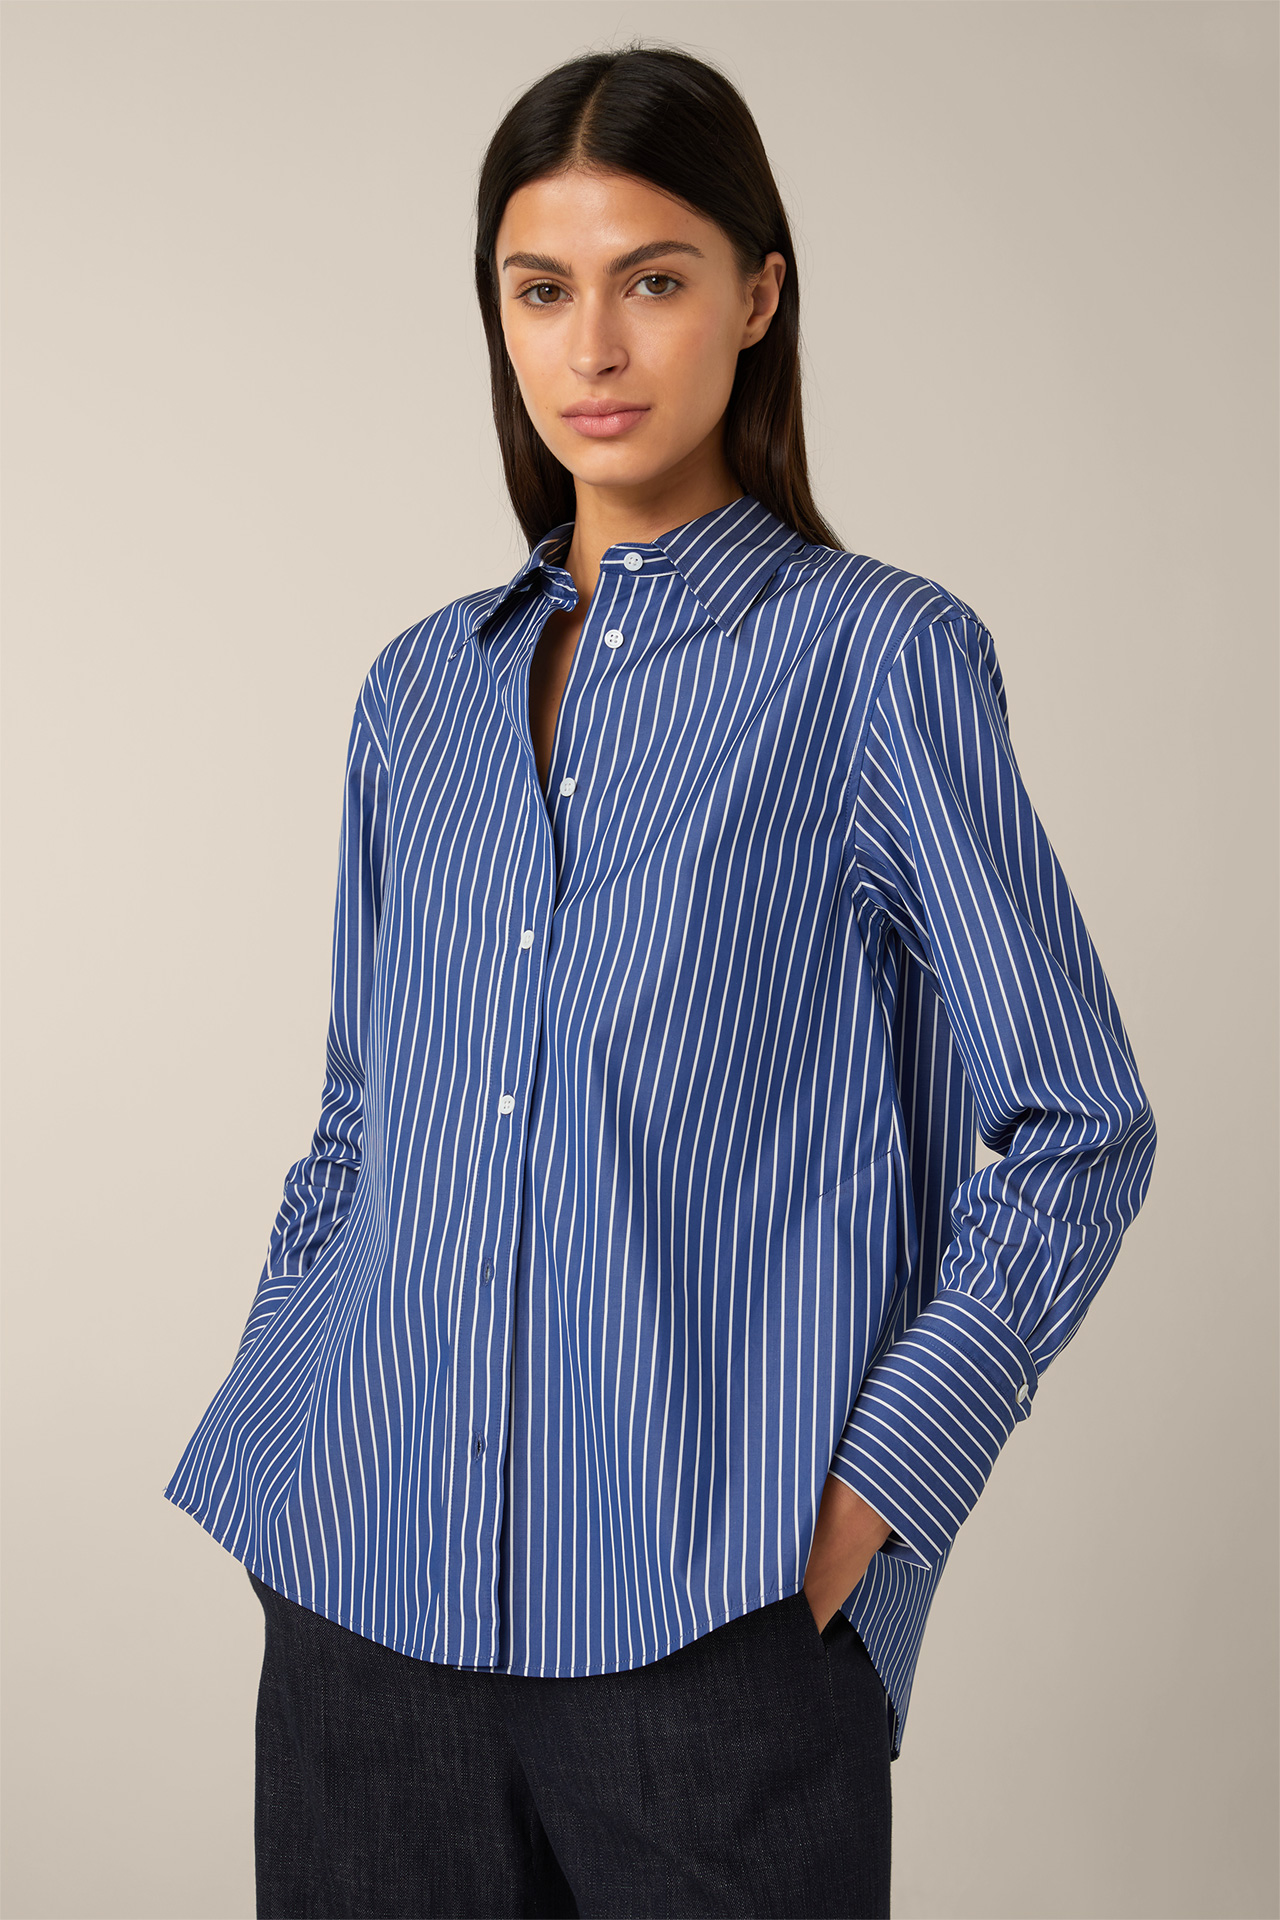 Popeline-Baumwoll-Streifen-Hemd-Bluse in Blau-Weiß windsor. gestreift im Online-Shop 